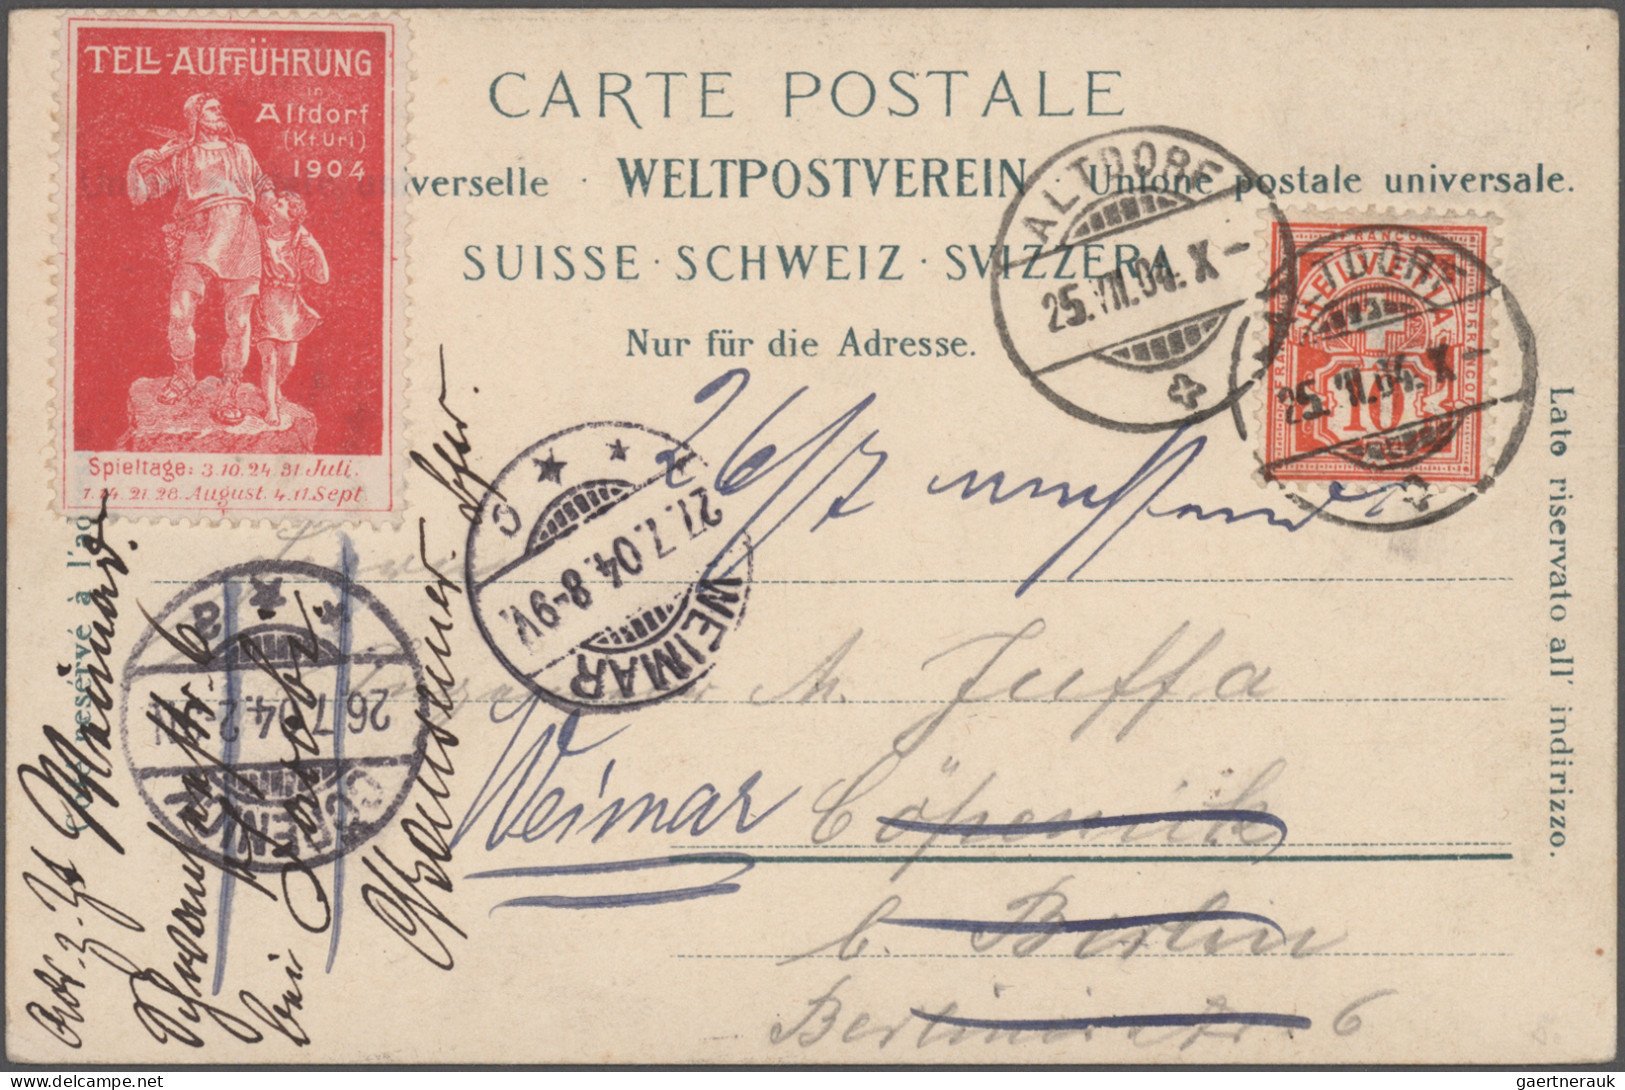 Schweiz: 1860/1970 (ca.), vielseitige Partie von ca. 230 Briefen, Karten und Gan